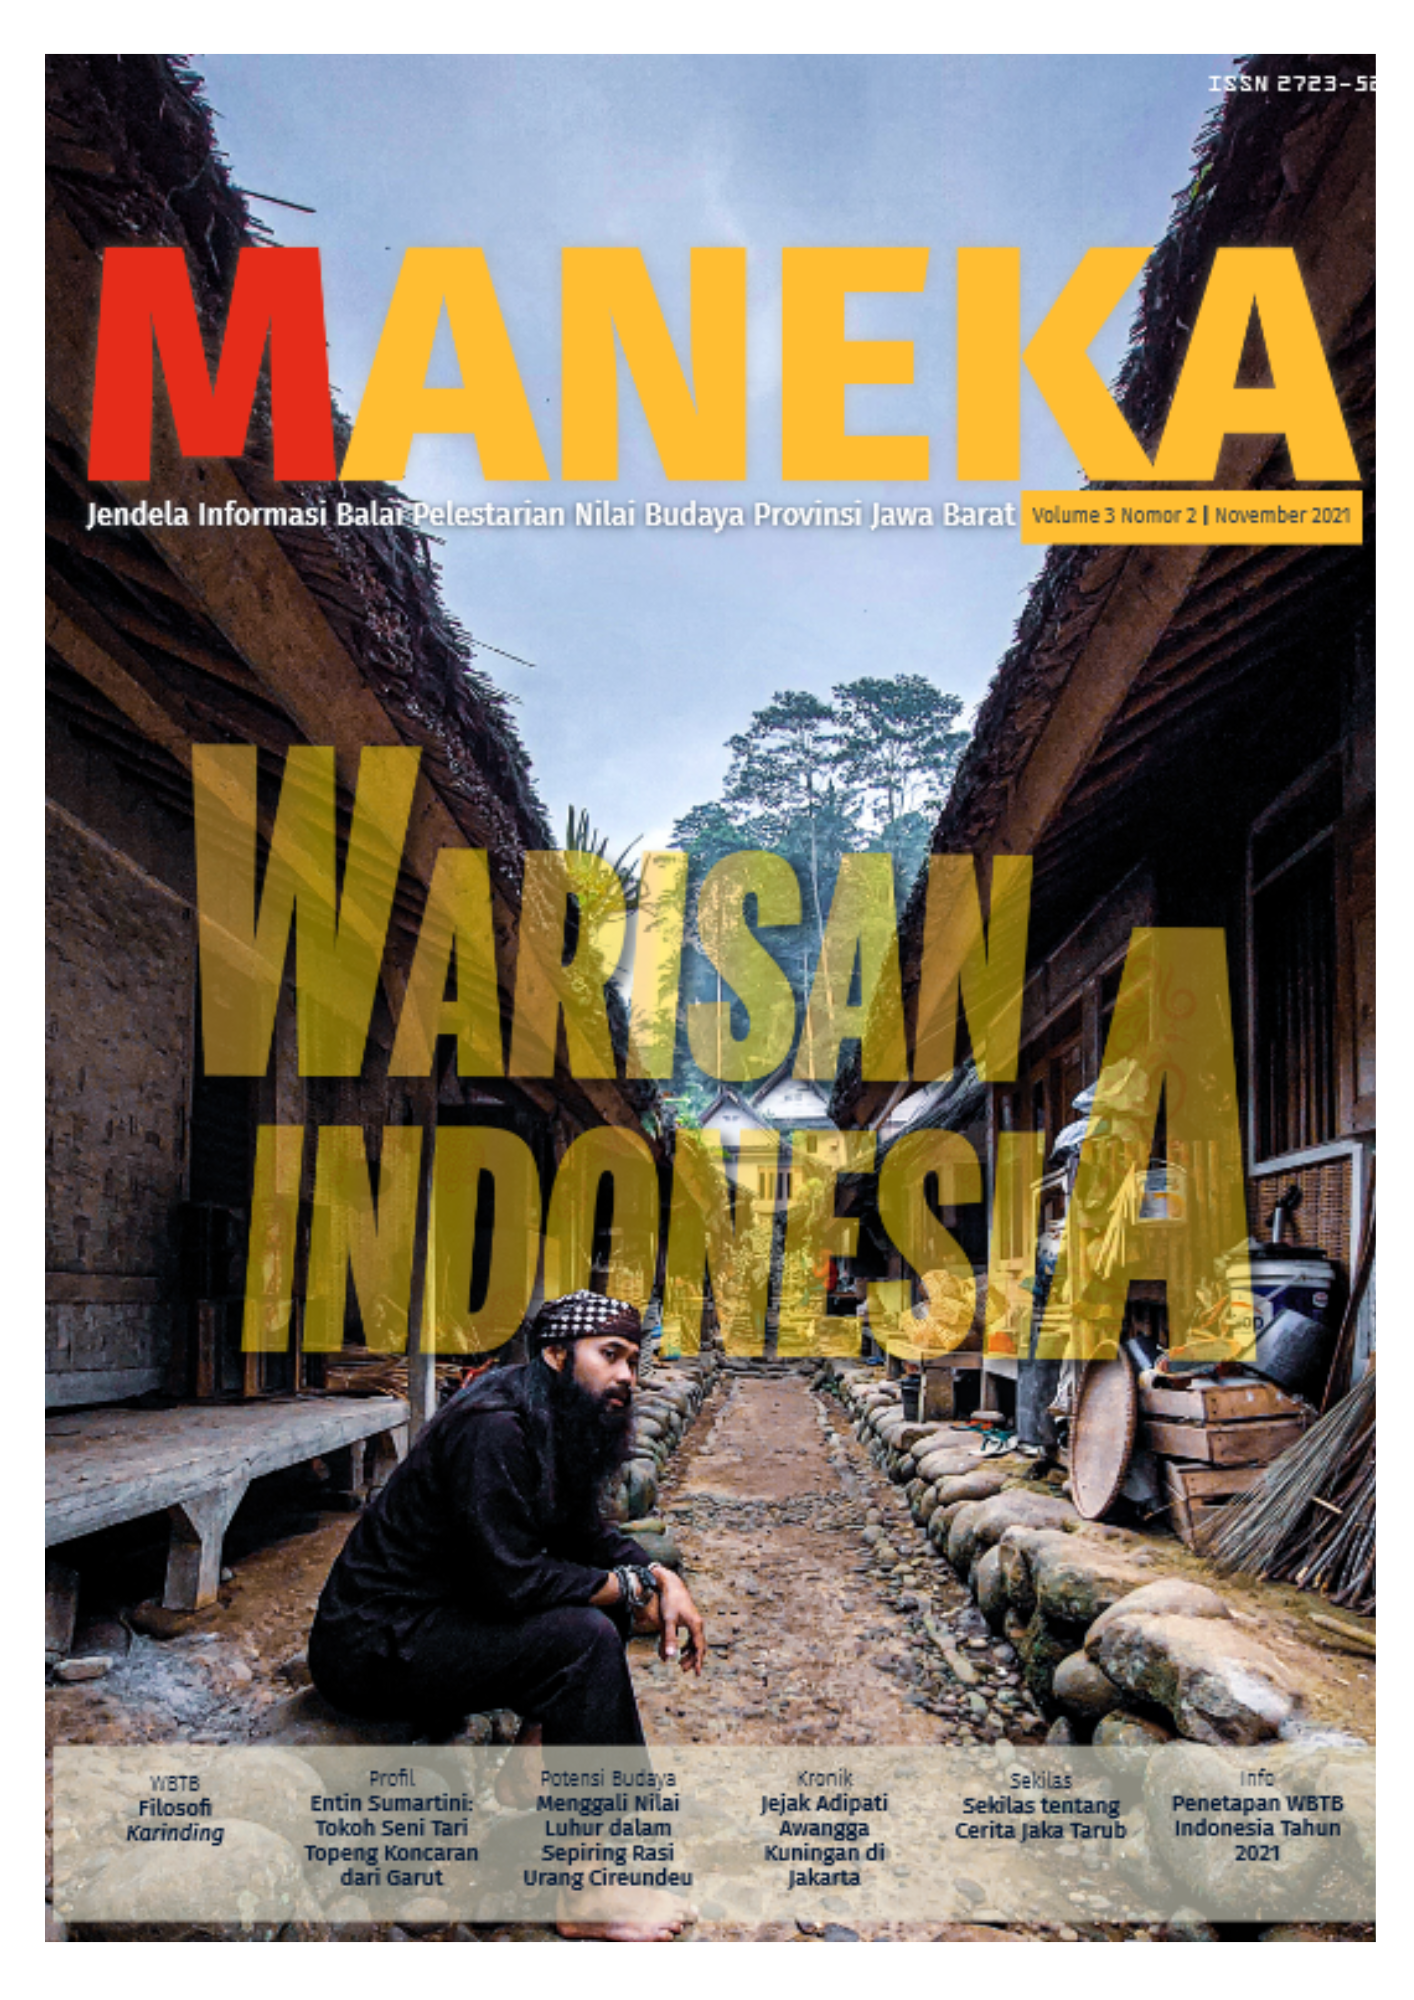 You are currently viewing MANEKA Vol.3 No.2 : Jendela Informasi Balai Pelestarian Nilai Budaya Jawa Barat